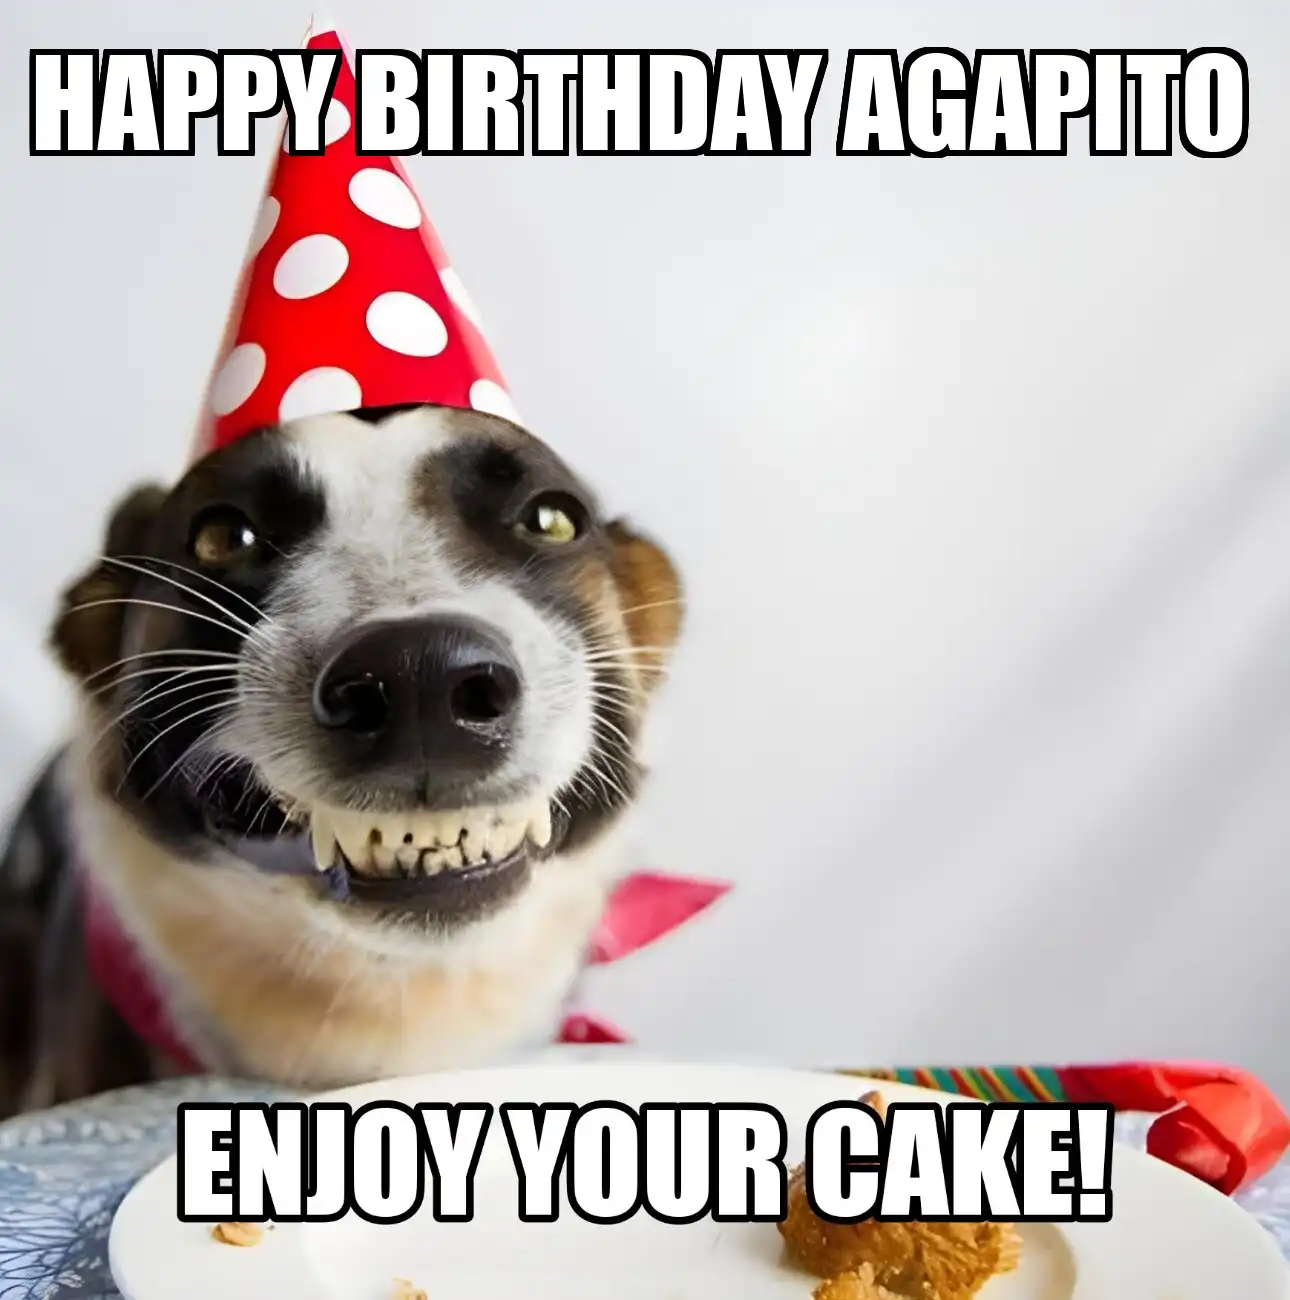 Happy Birthday Agapito Enjoy Your Cake Dog Meme